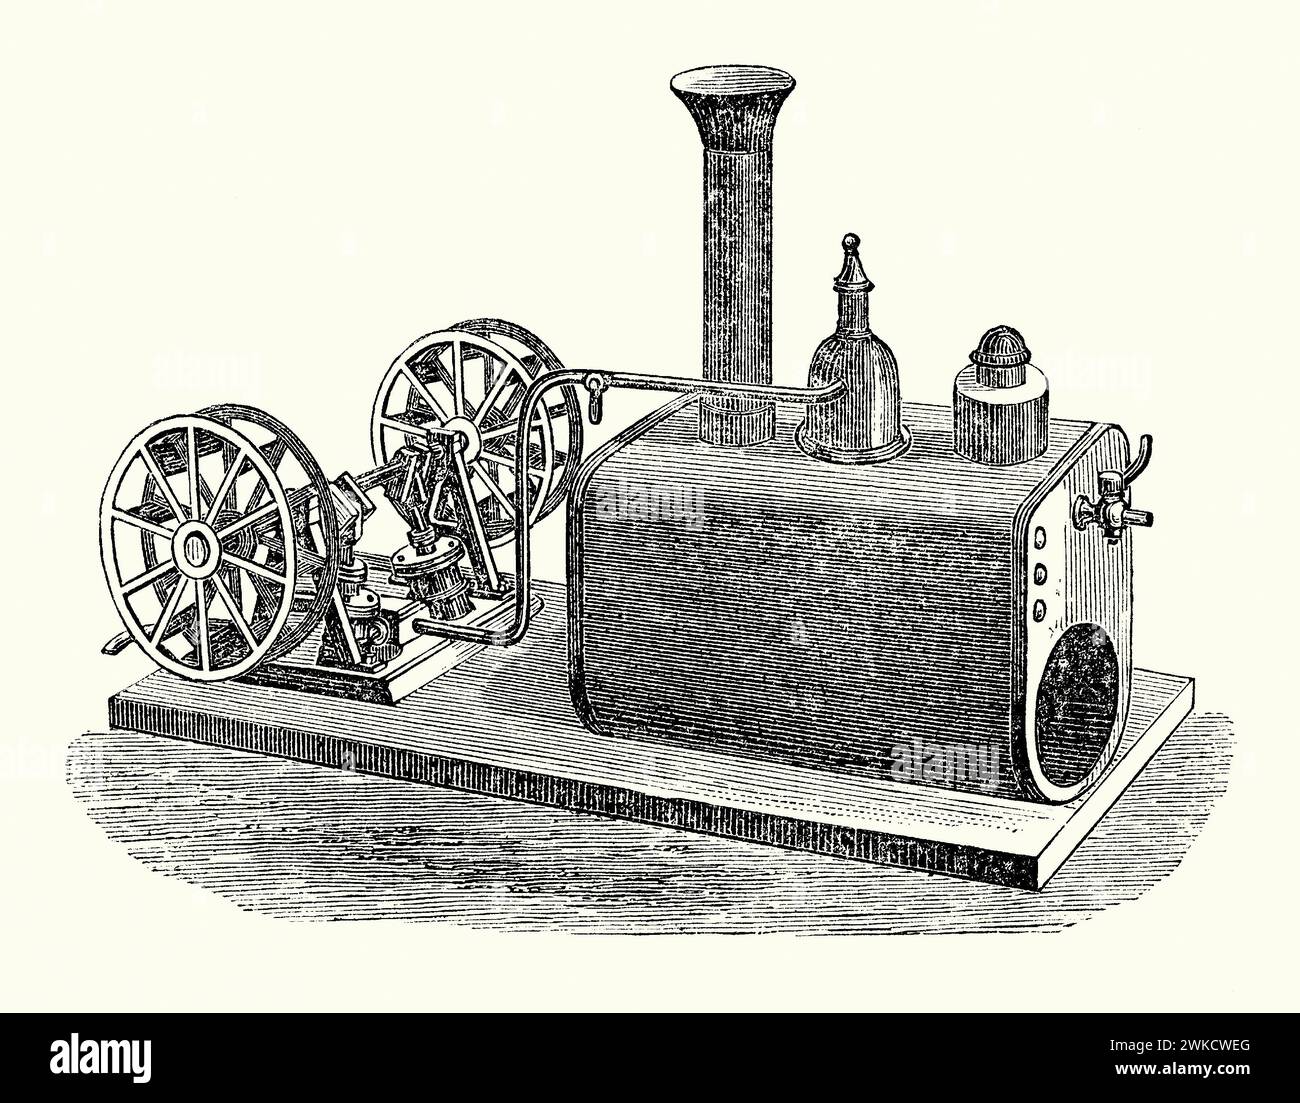 Une vieille gravure d'un moteur marin qui pourrait être utilisé dans un modèle de bateau à aubes des années 1800 Il est tiré du livre victorien des années 1890 sur les sports, les jeux et les passe-temps. Cette machine à vapeur possède deux pistons (à gauche), reliés à un vilebrequin fournissant la puissance à chaque roue à aubes. La chaudière (droite) aurait été chauffée par en-dessous par une petite lampe à huile pour créer la puissance de vapeur. Aujourd'hui, le gaz comprimé, comme le butane, est souvent utilisé pour les bateaux à vapeur modélisés. Banque D'Images